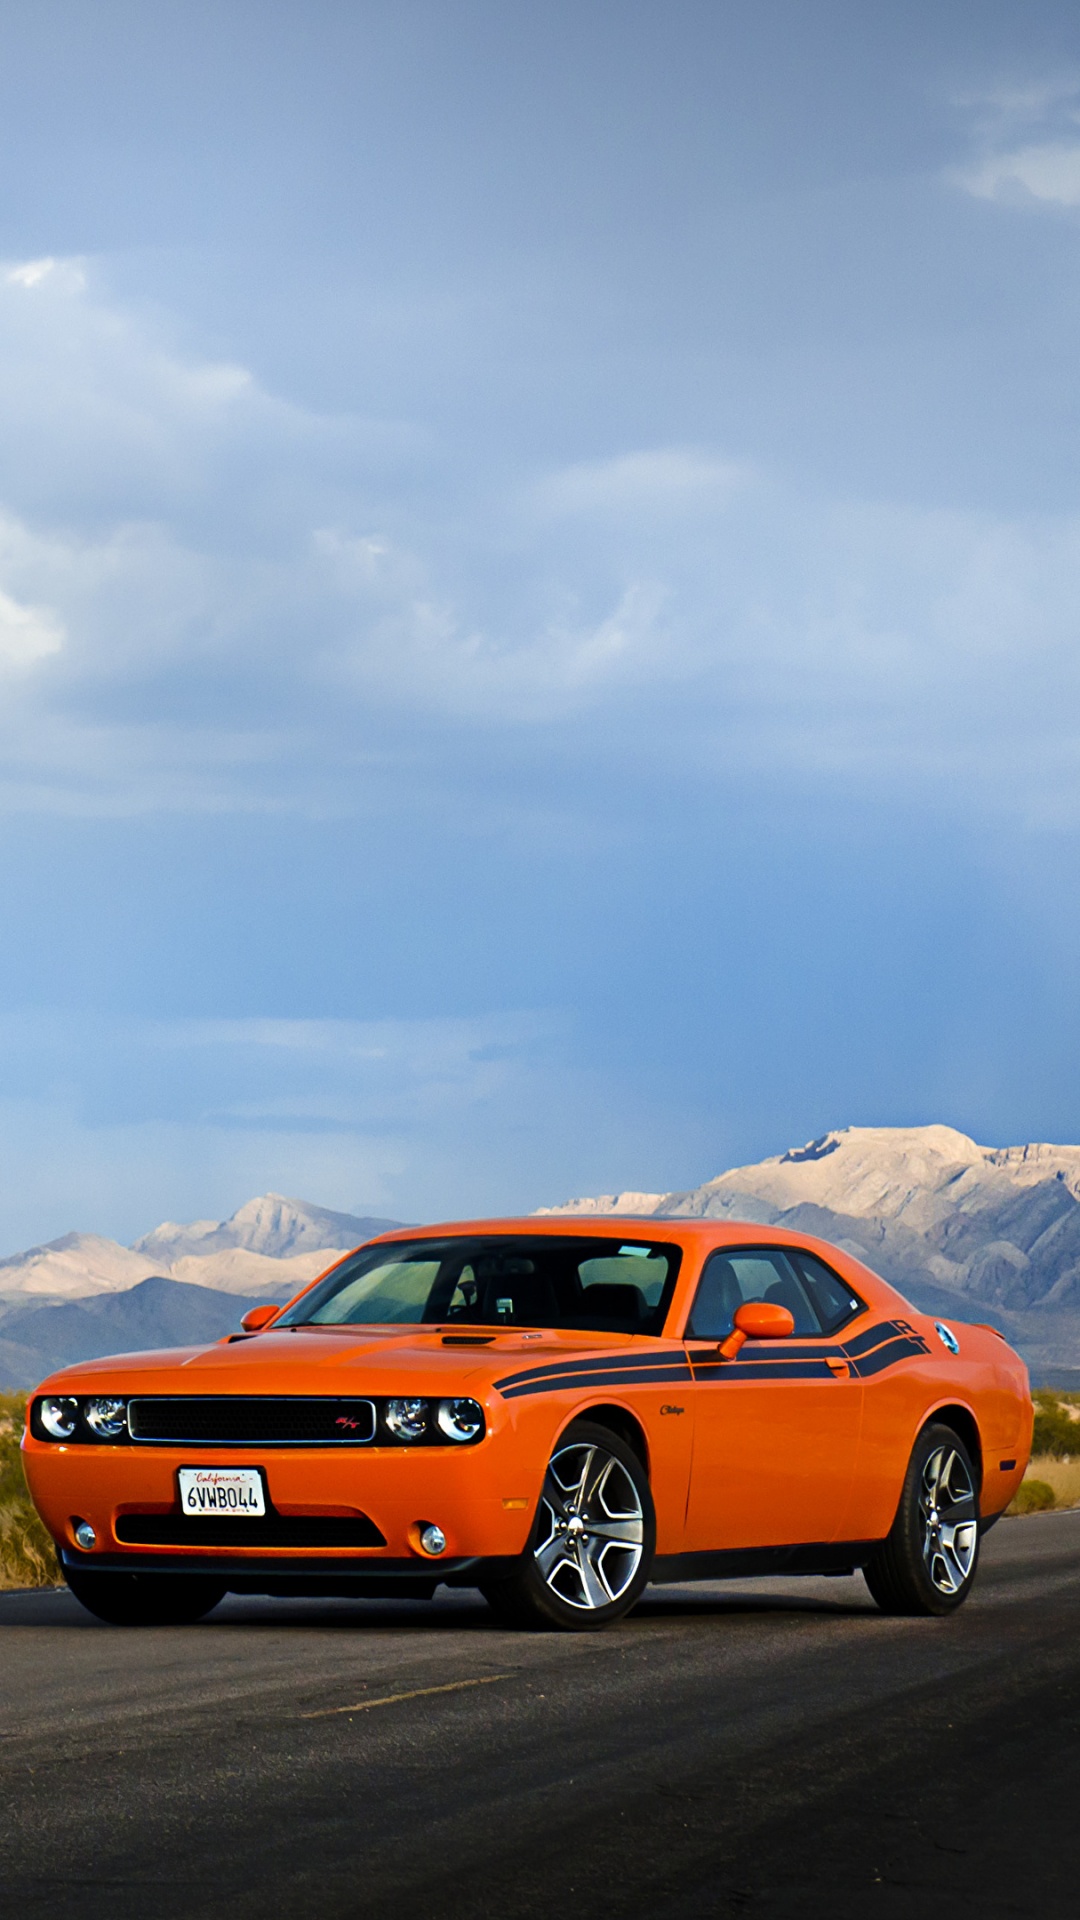 Chevrolet Camaro Orange Sur Route Pendant la Journée. Wallpaper in 1080x1920 Resolution